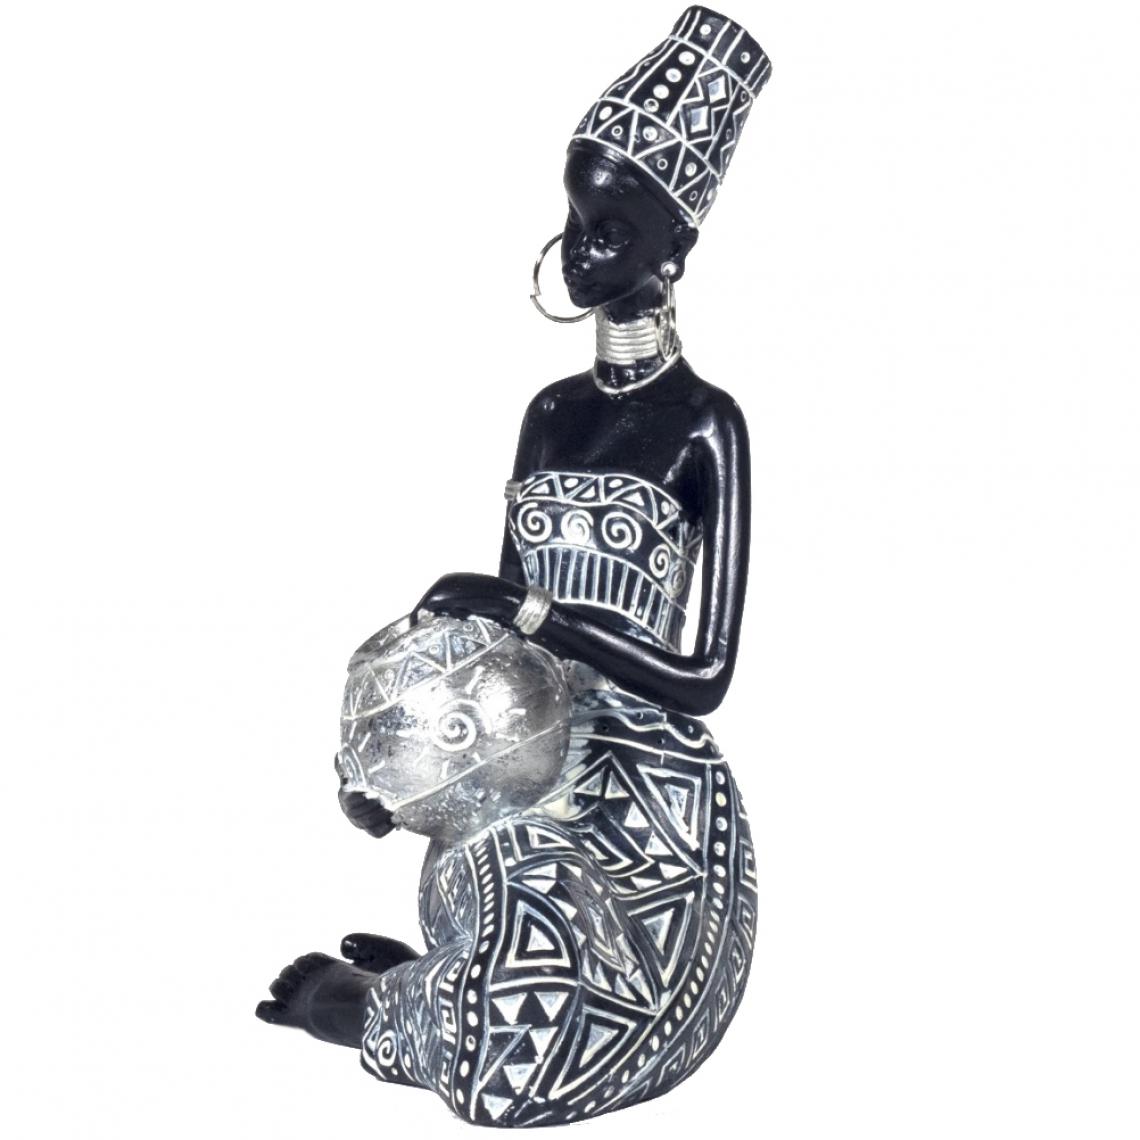 Signe - Figurine Africaine porteuse d'eau - Petite déco d'exterieur